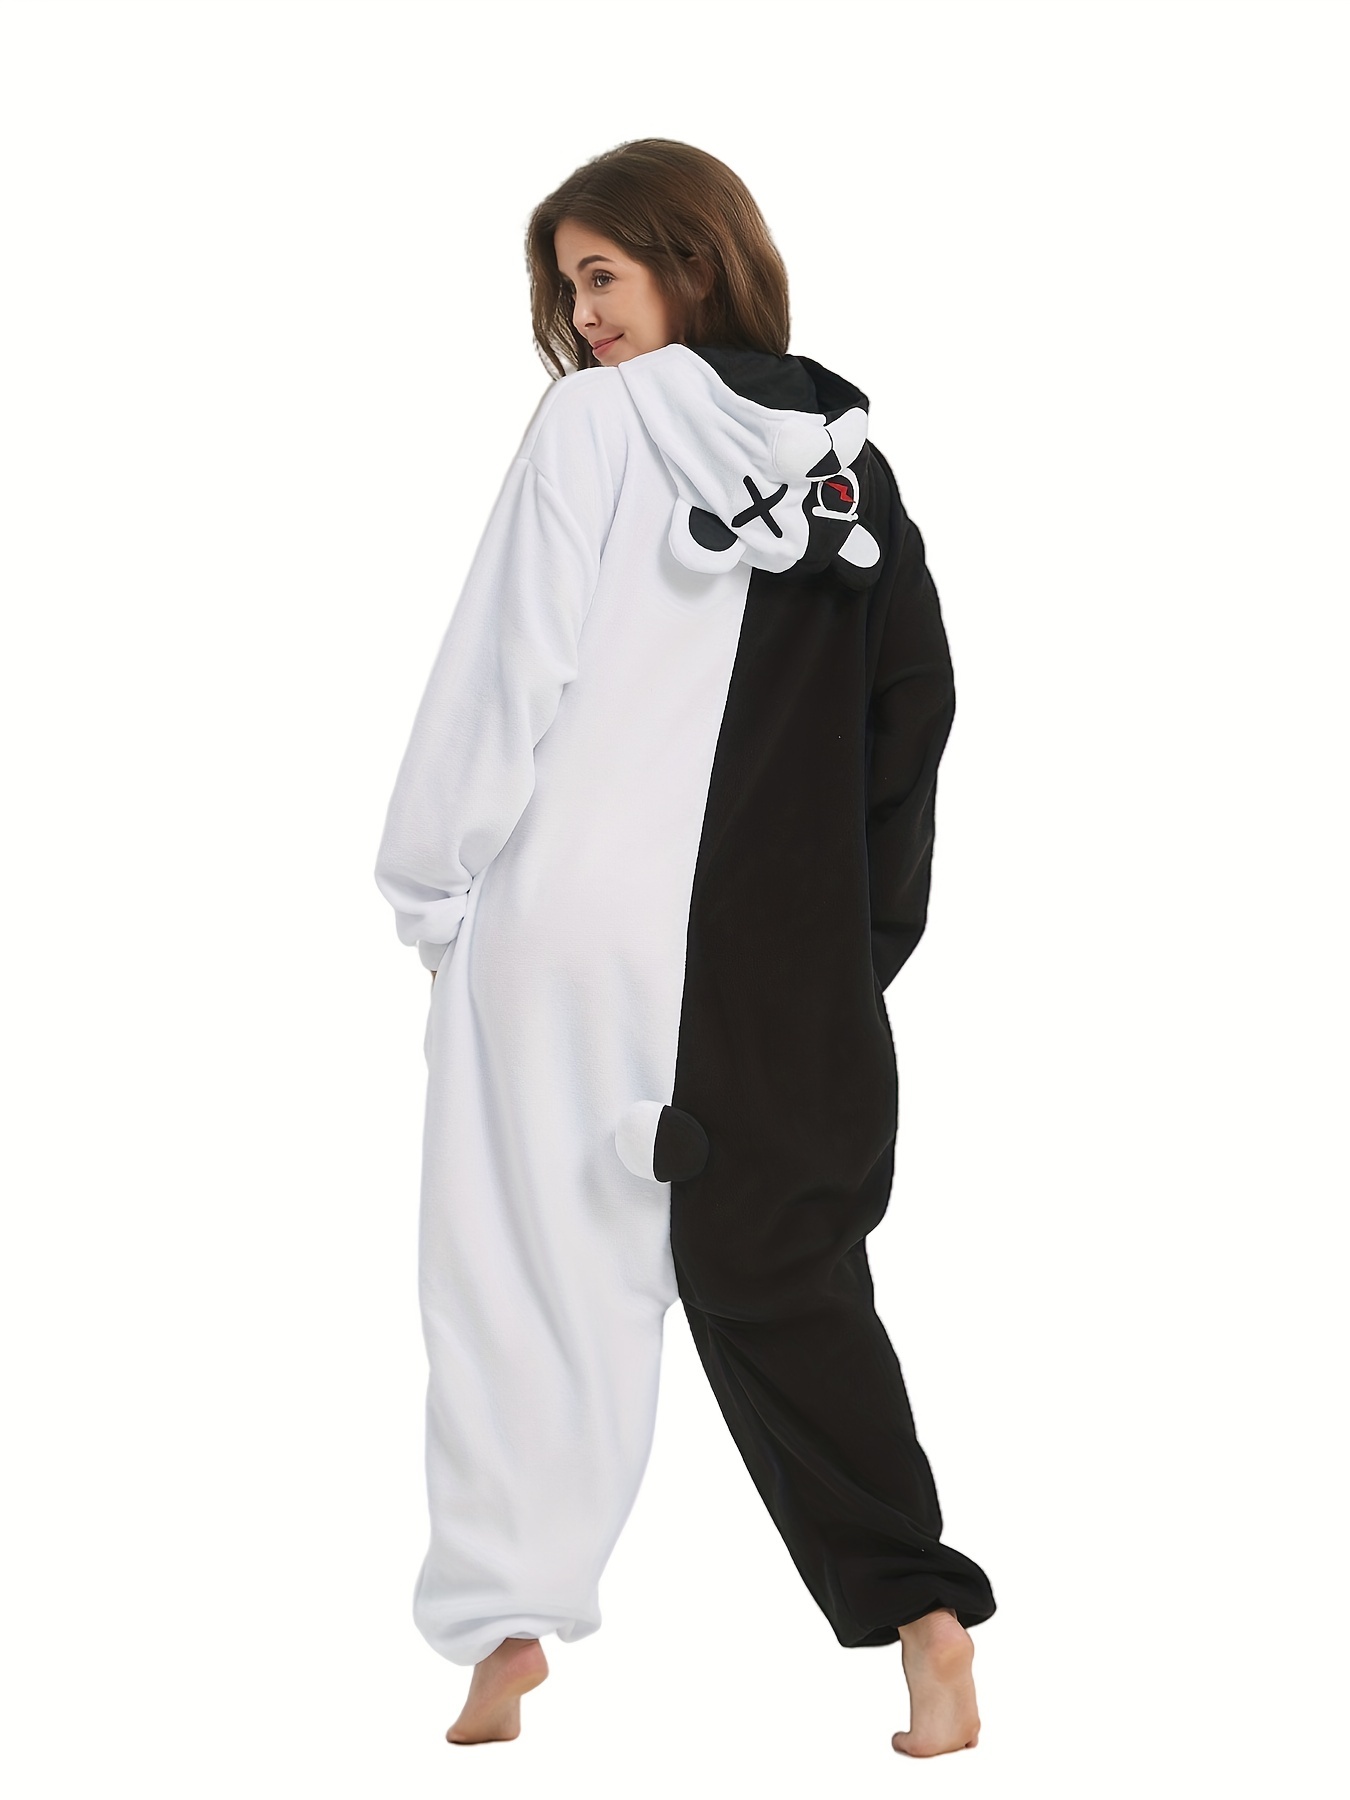 Mono de pijama de oso de dibujos animados para festival de música, pijama cómodo y lindo con capucha y mangas largas con cremallera, ropa de dormir y estar en casa para mujeres